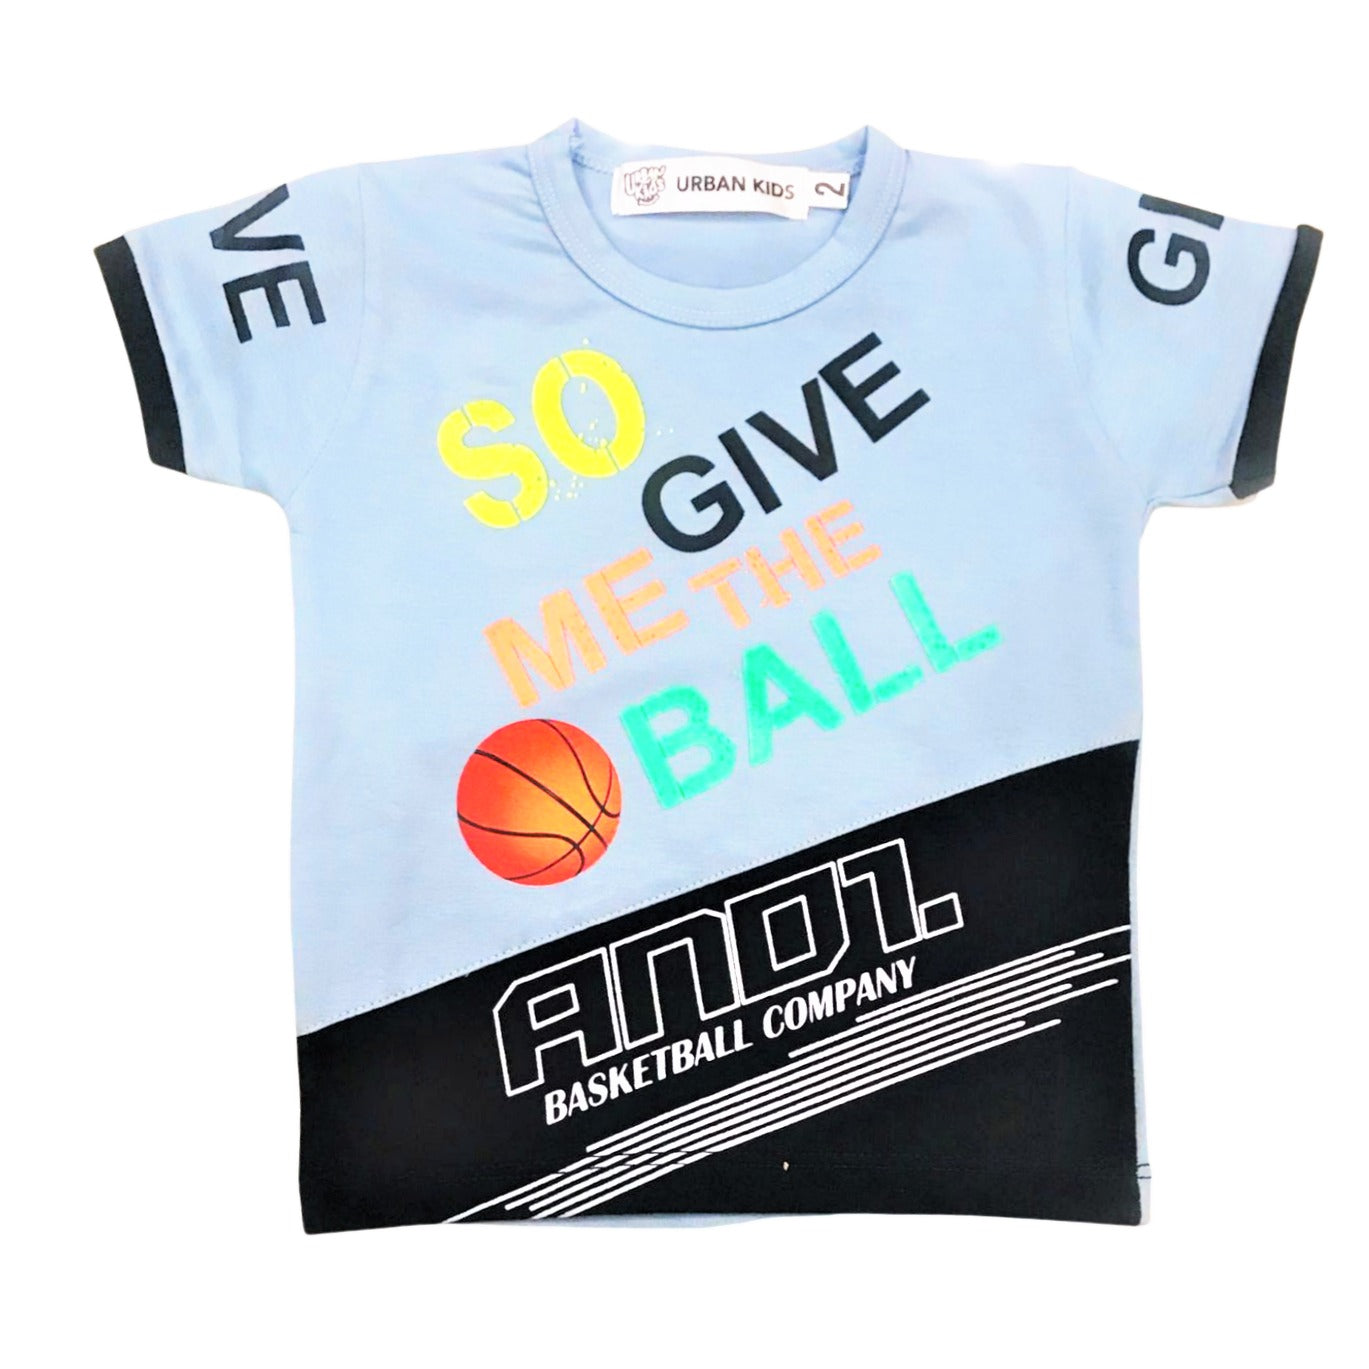 Basketball Company Shirt